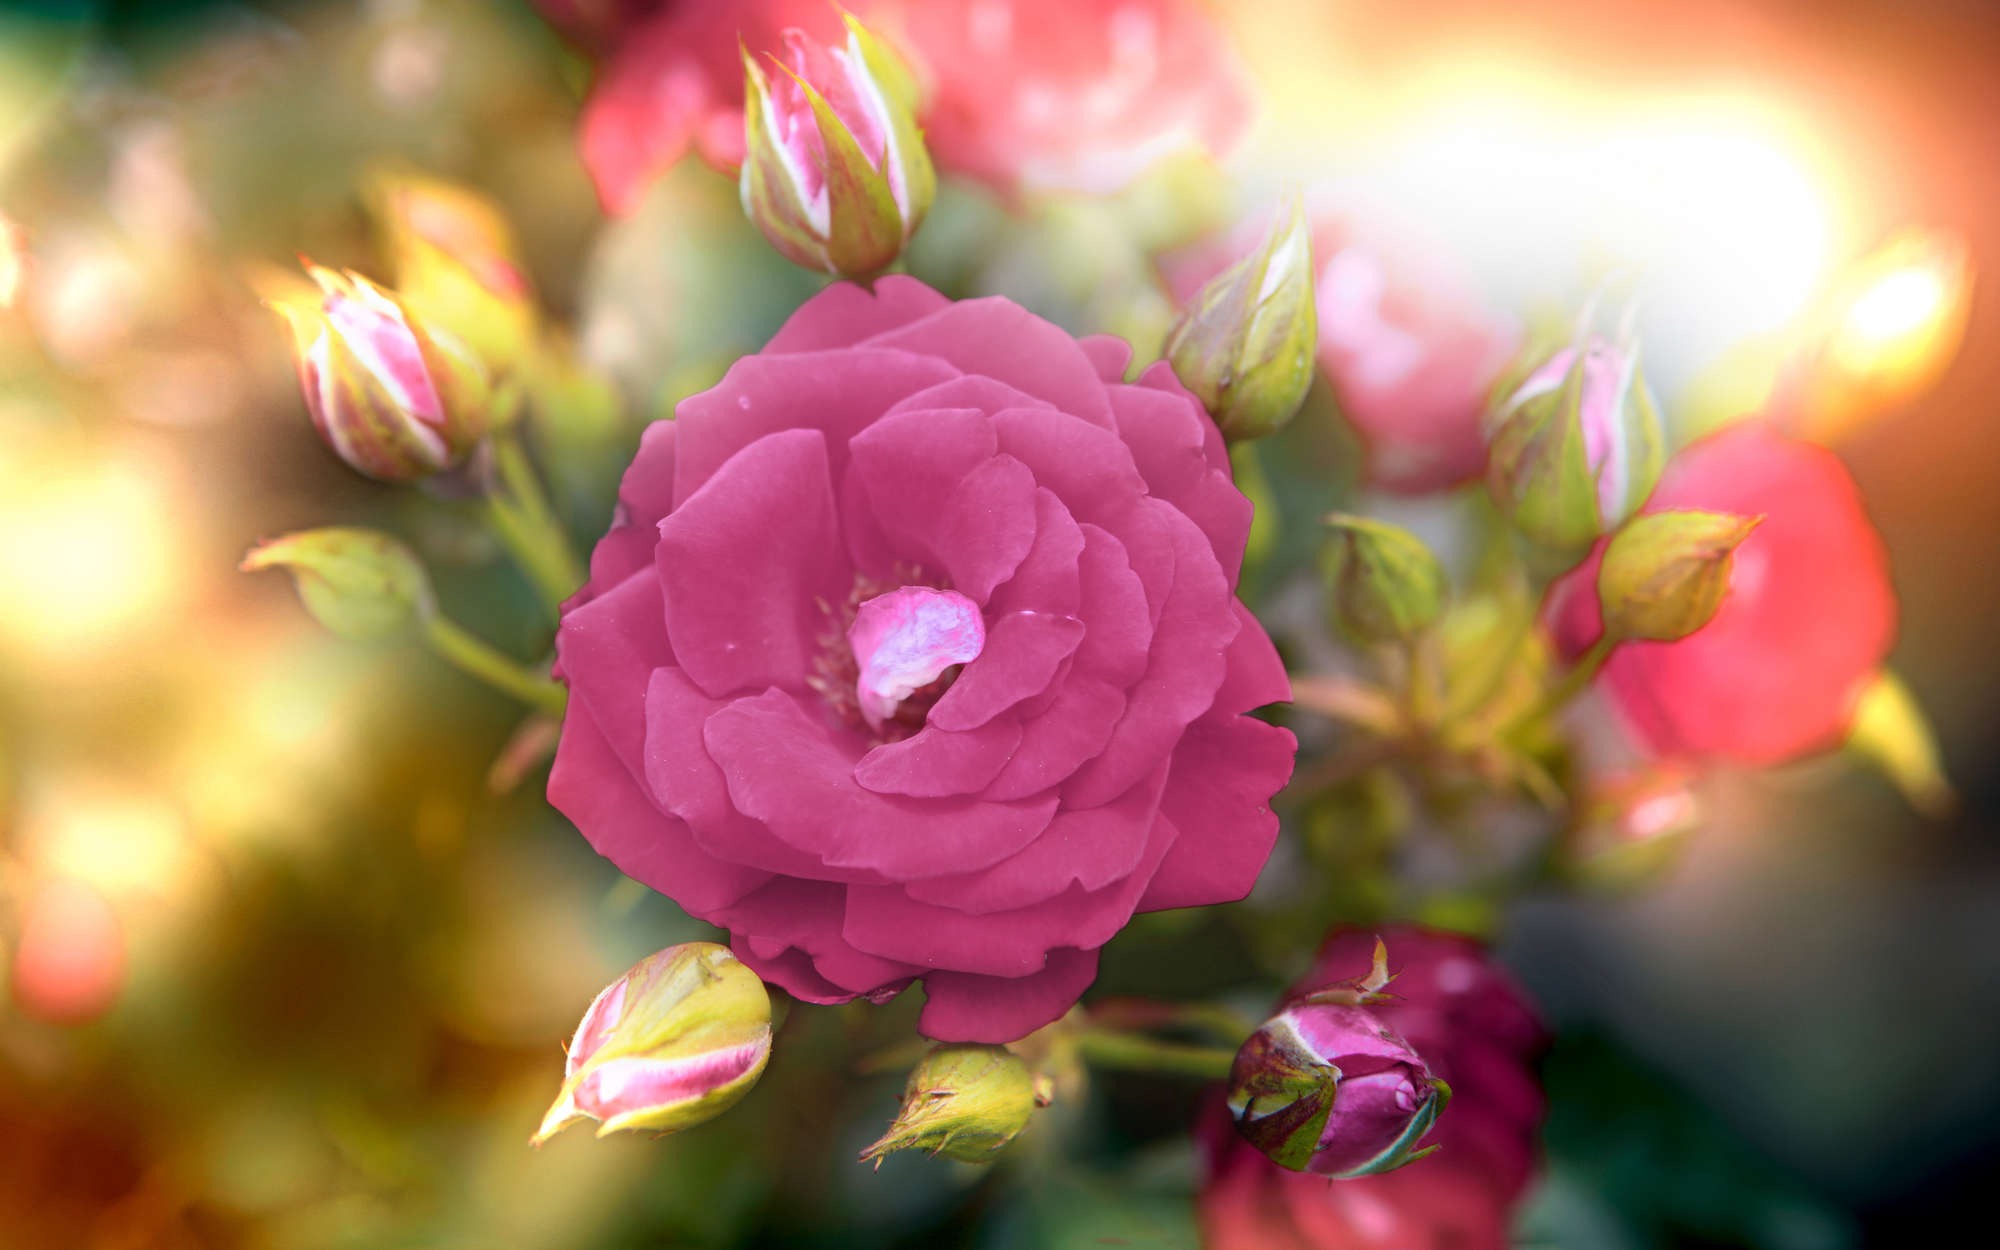             Digital behang bloem met bloesem in roze - parelmoer glad vlies
        